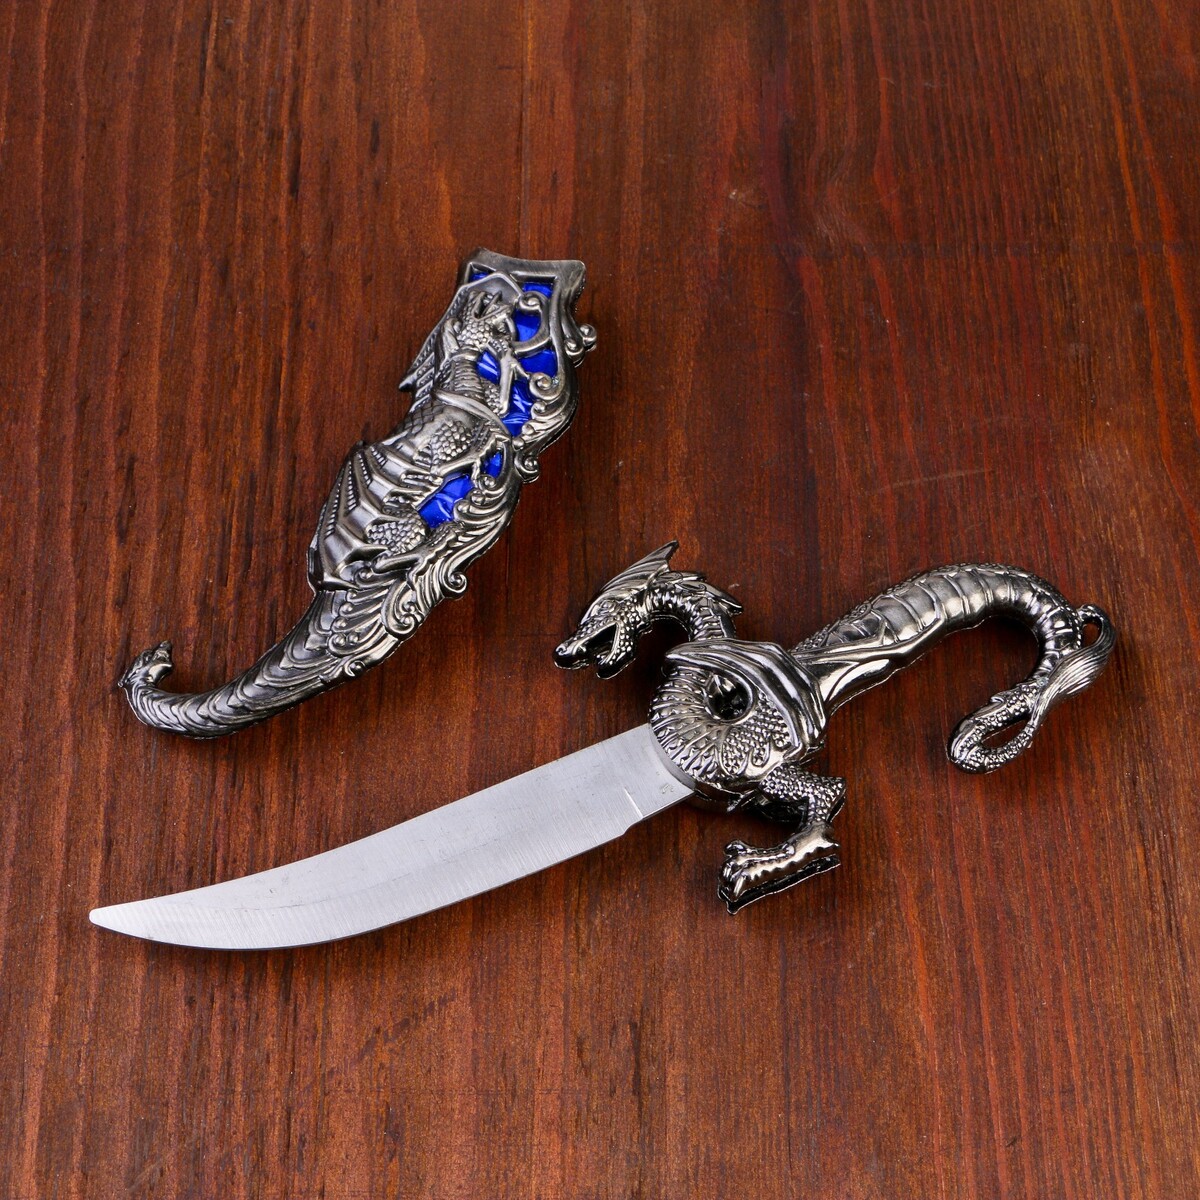 Сувенирный нож, 24,5 см резные ножны, дракон на рукояти сувенирный нож 24 5 см резные ножны дракон на рукояти